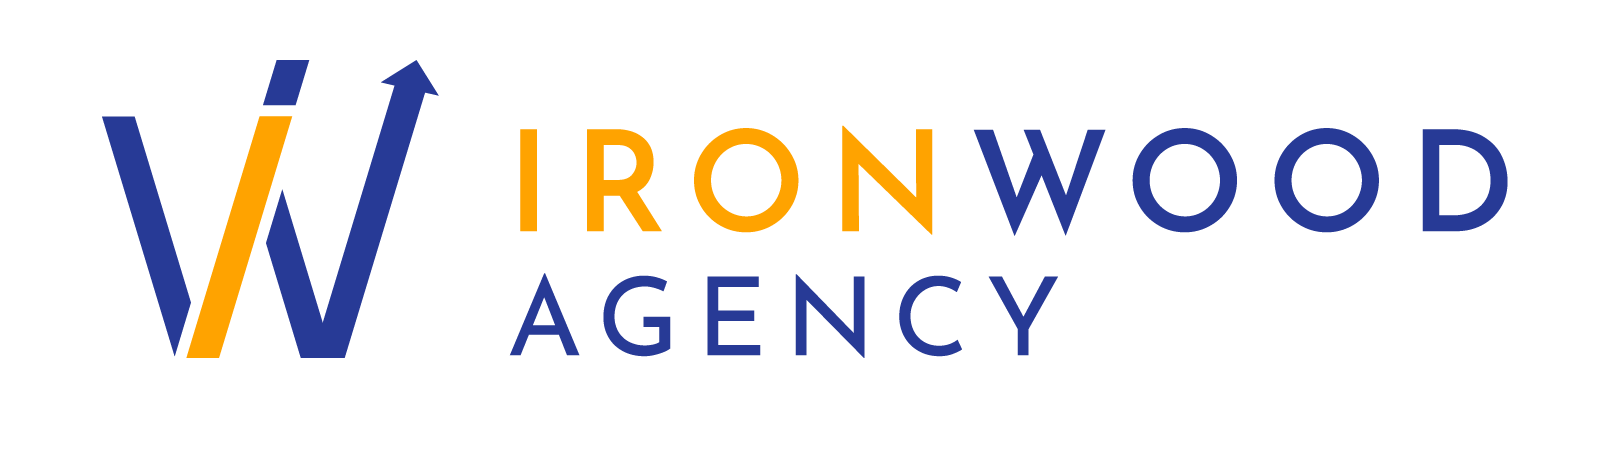 Ironwood Agency